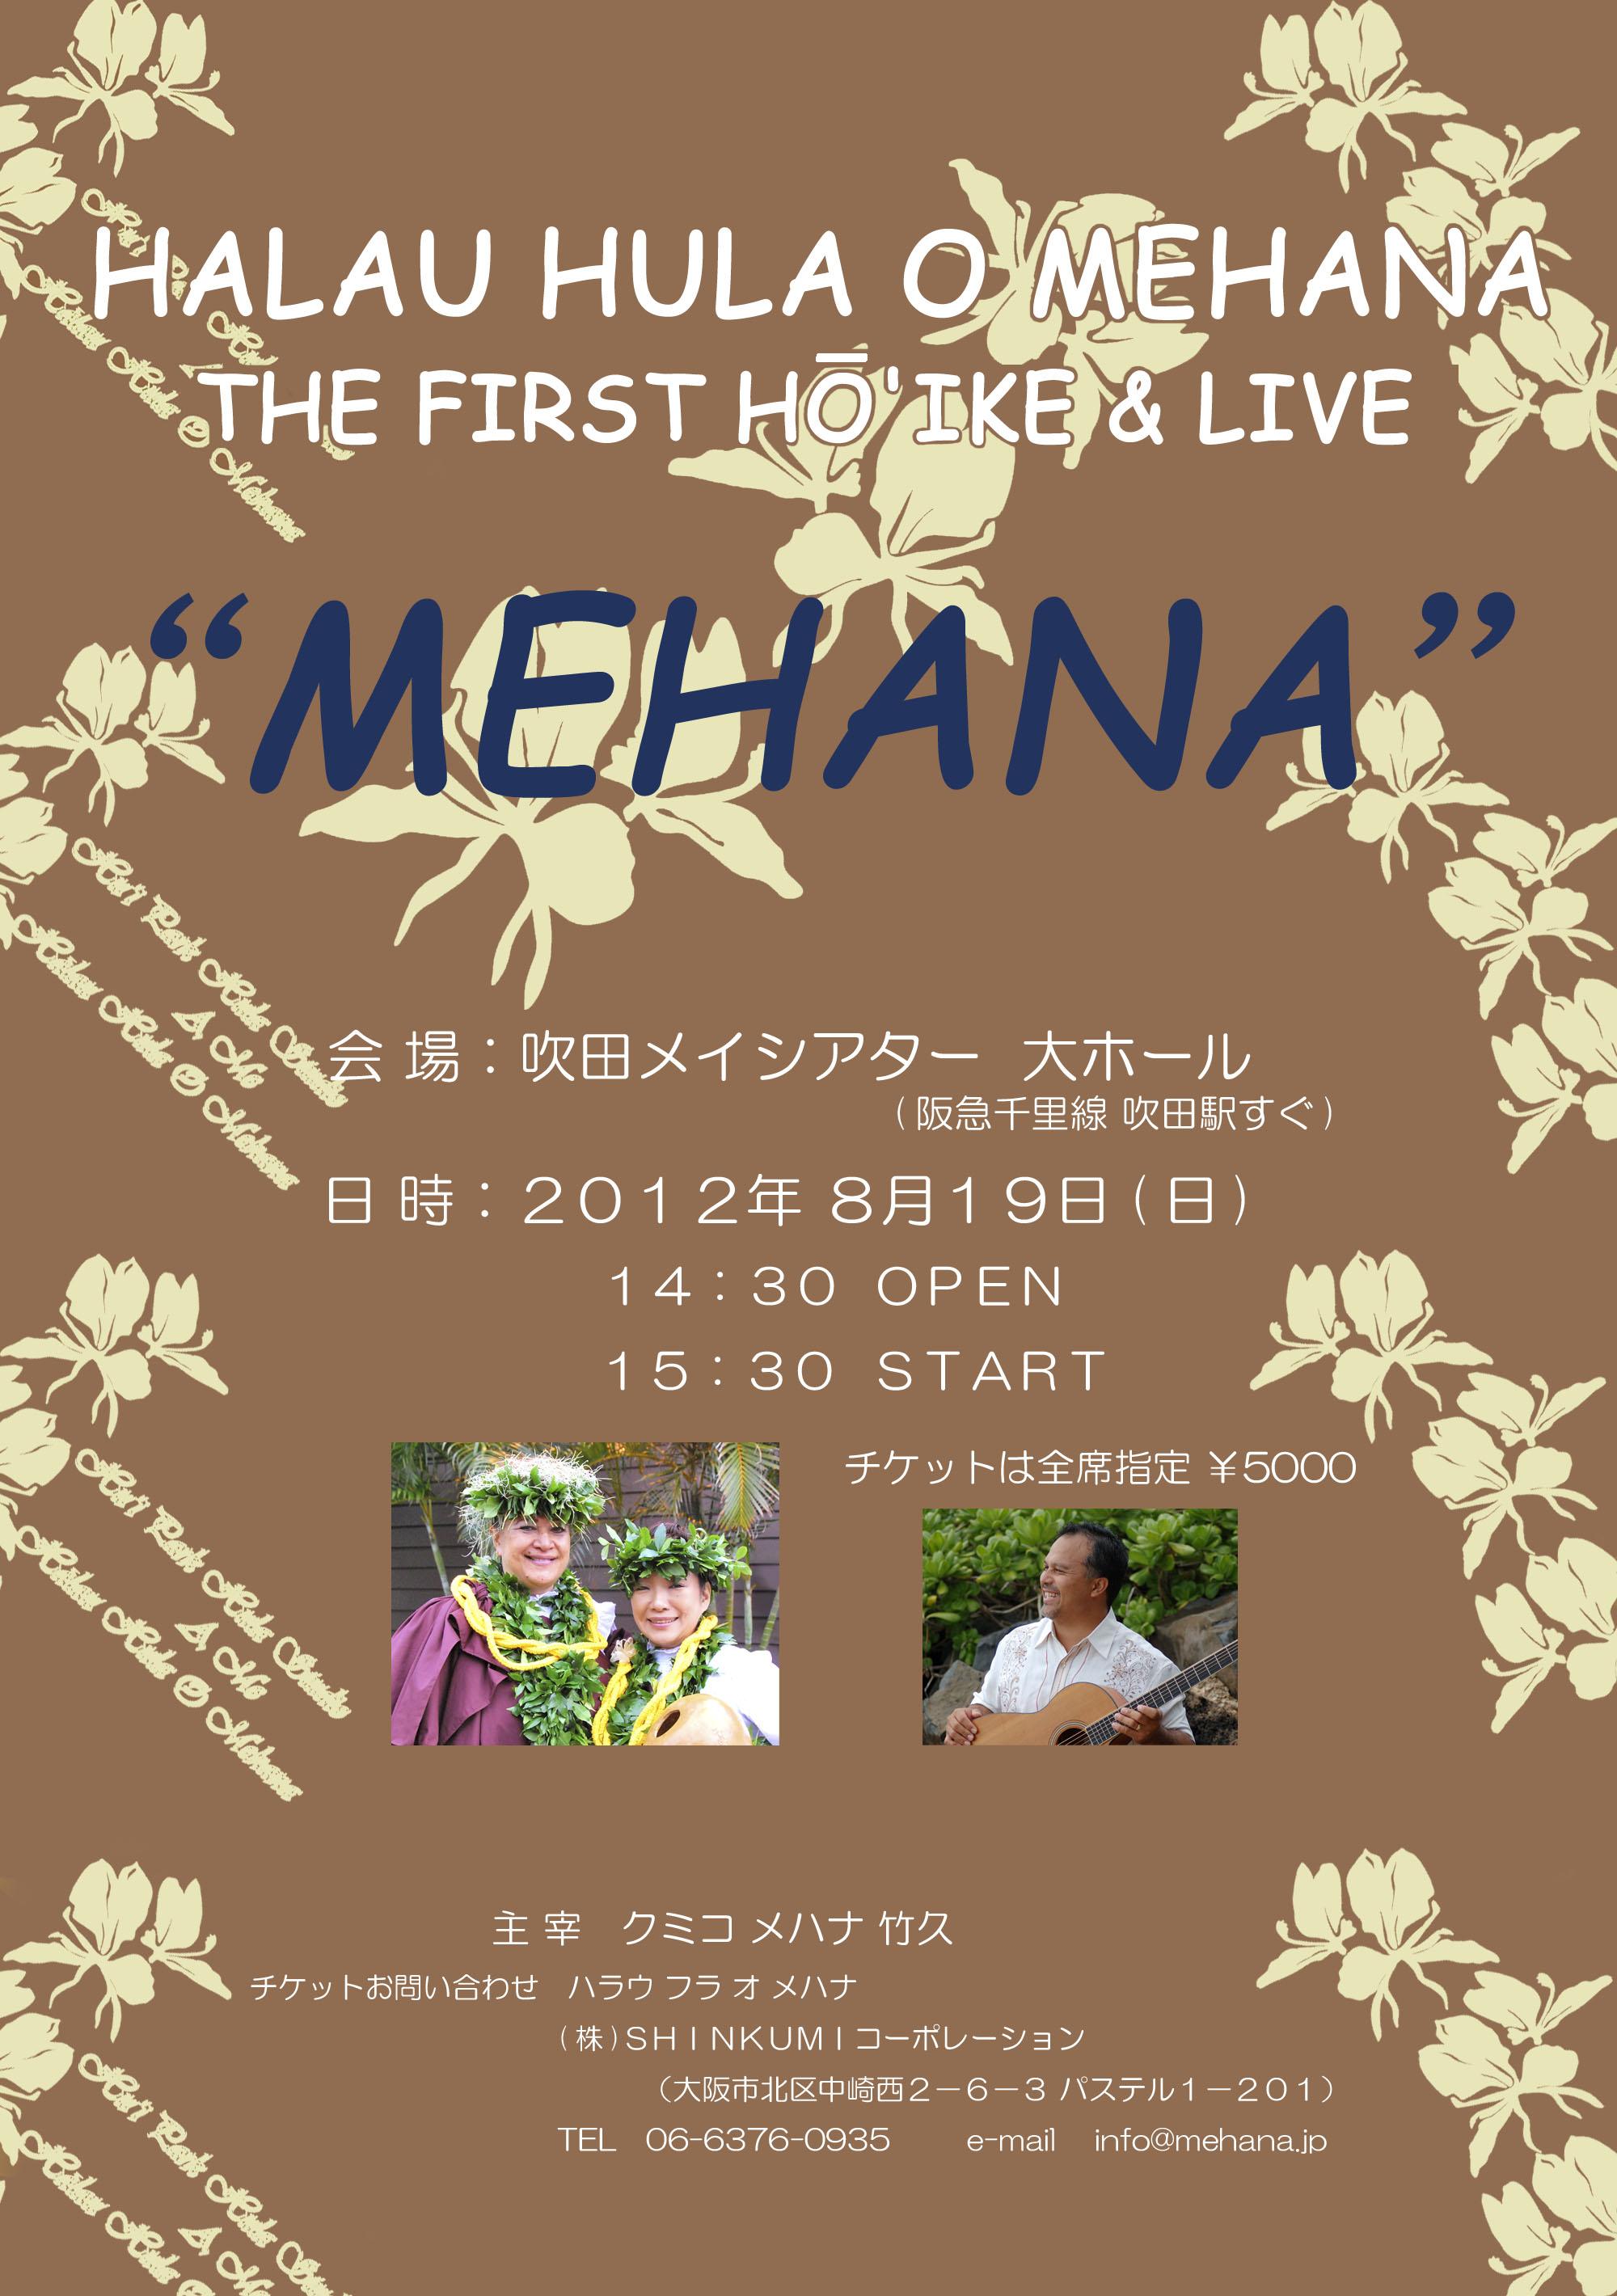 MEHANA NEWS：HALAU HULA O MEHANA THE FIRST HOIKE & LIVE